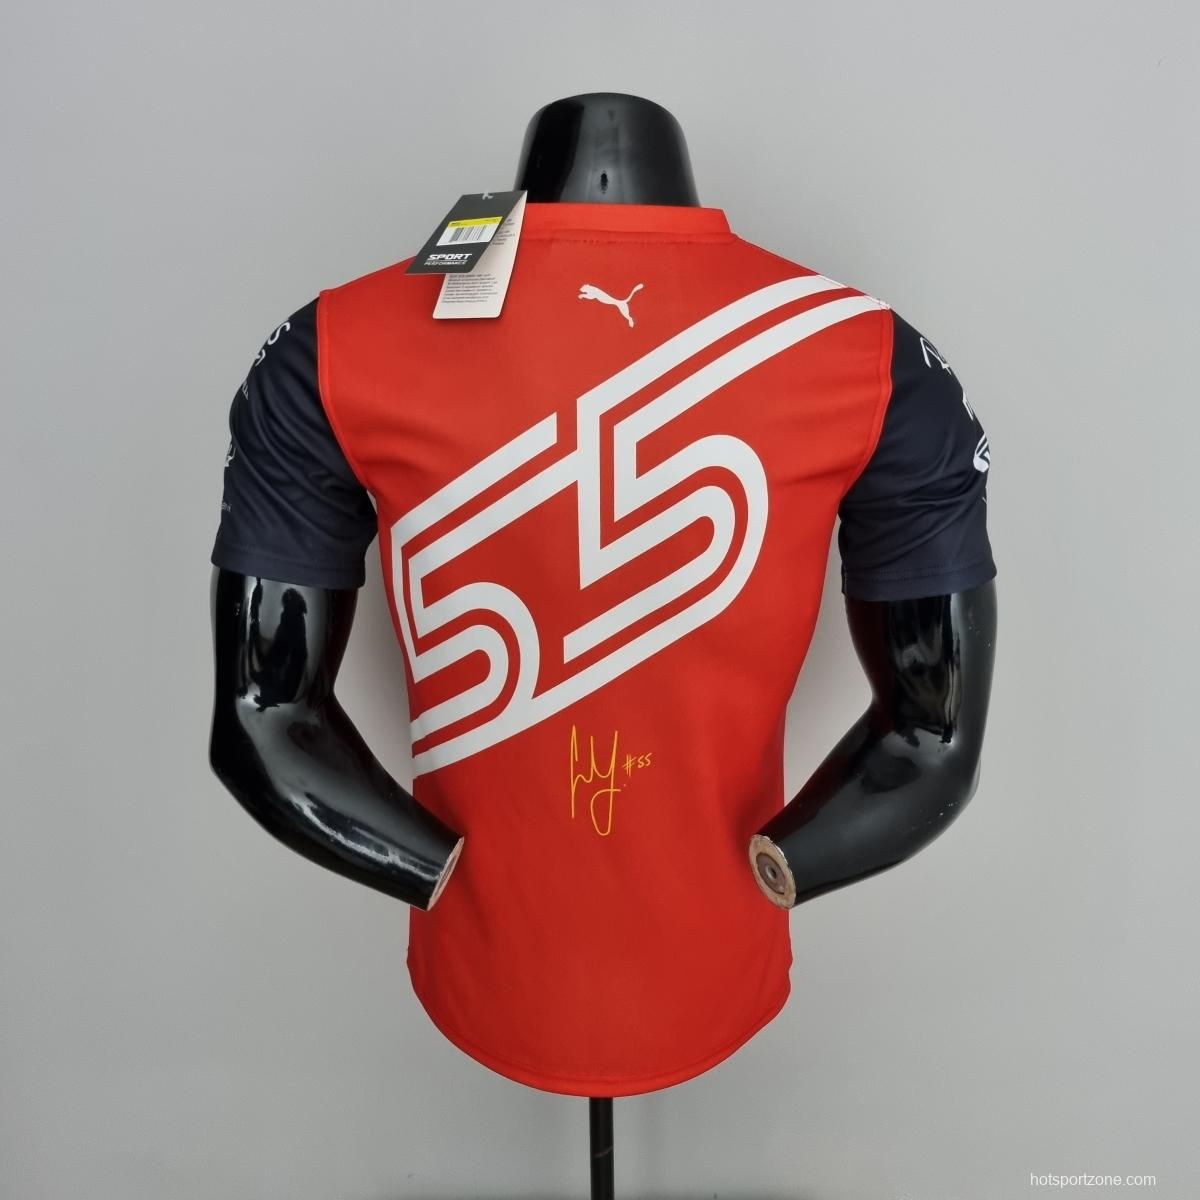 2022 F1 Formula One; Ferrari racing suit crew neck red 55